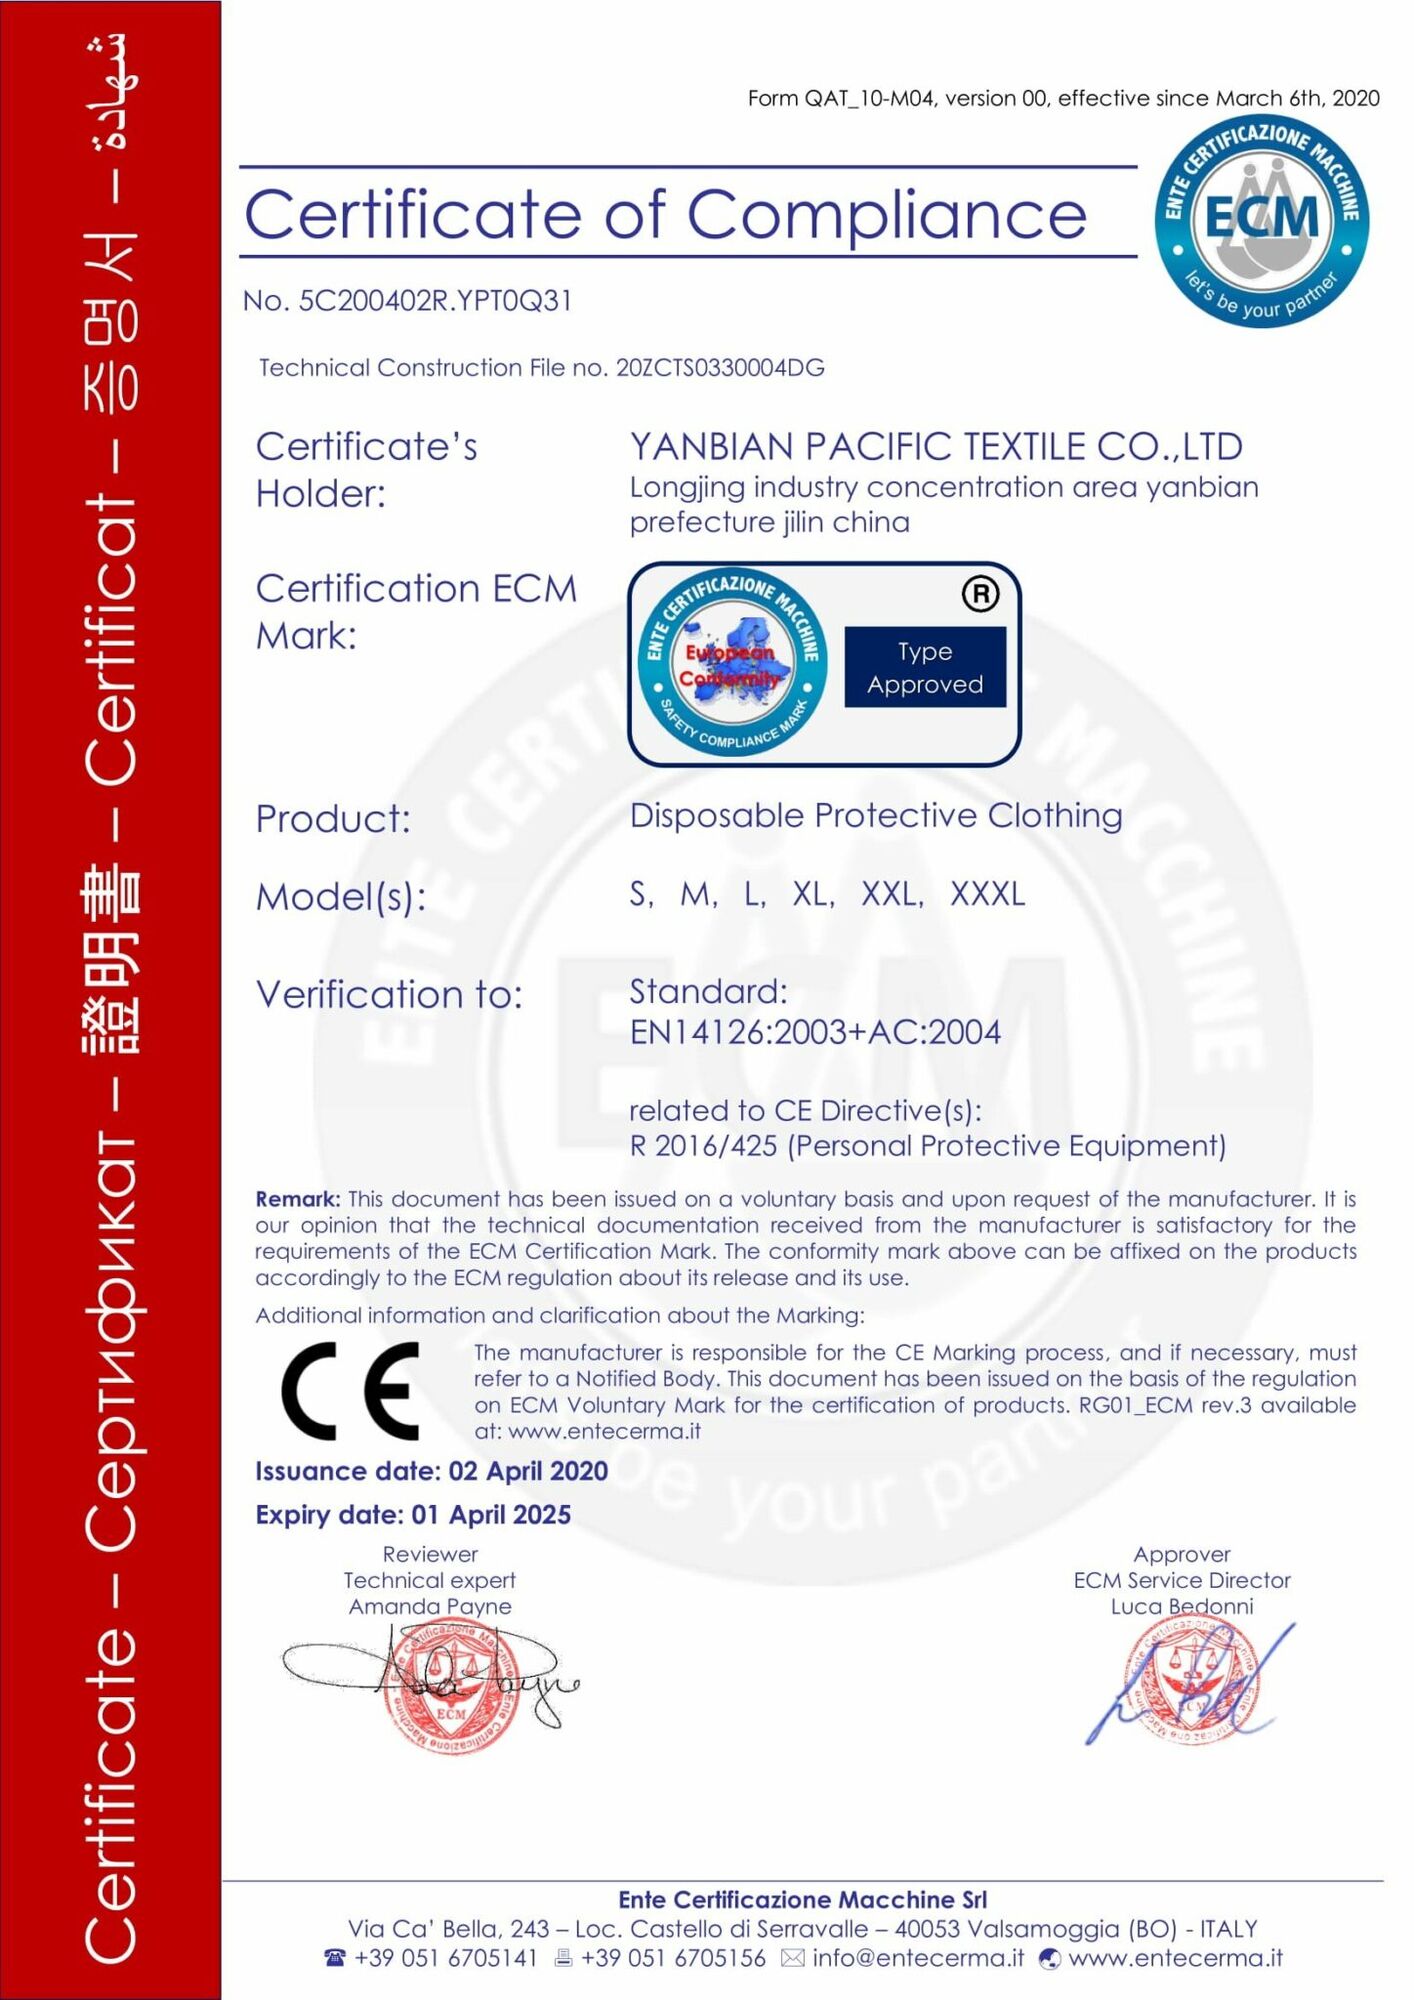 Сертифікат ЄСМ, який був виданий на привезені "Епіцентром" товари